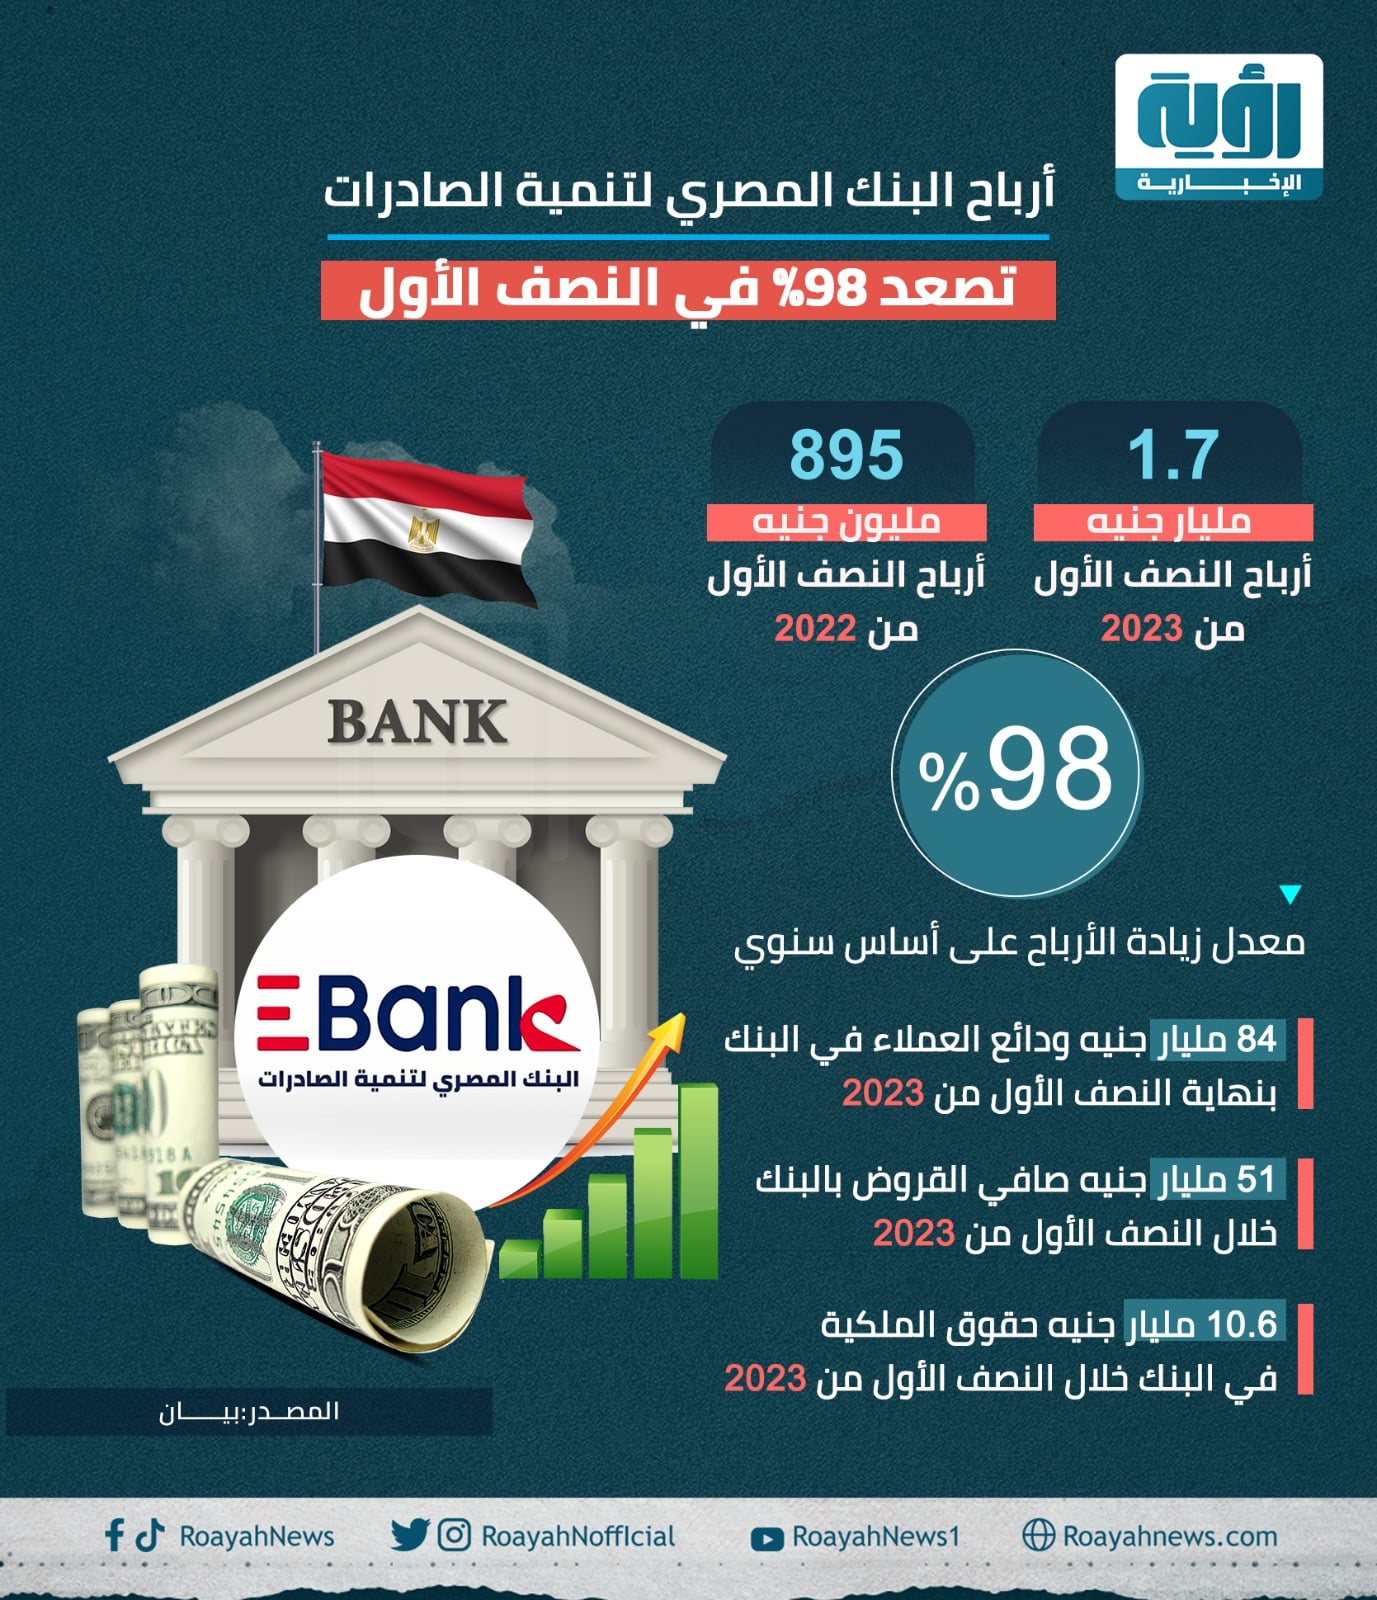 قفزة في أرباح البنك المصري لتنمية الصادرات خلال النصف الأول